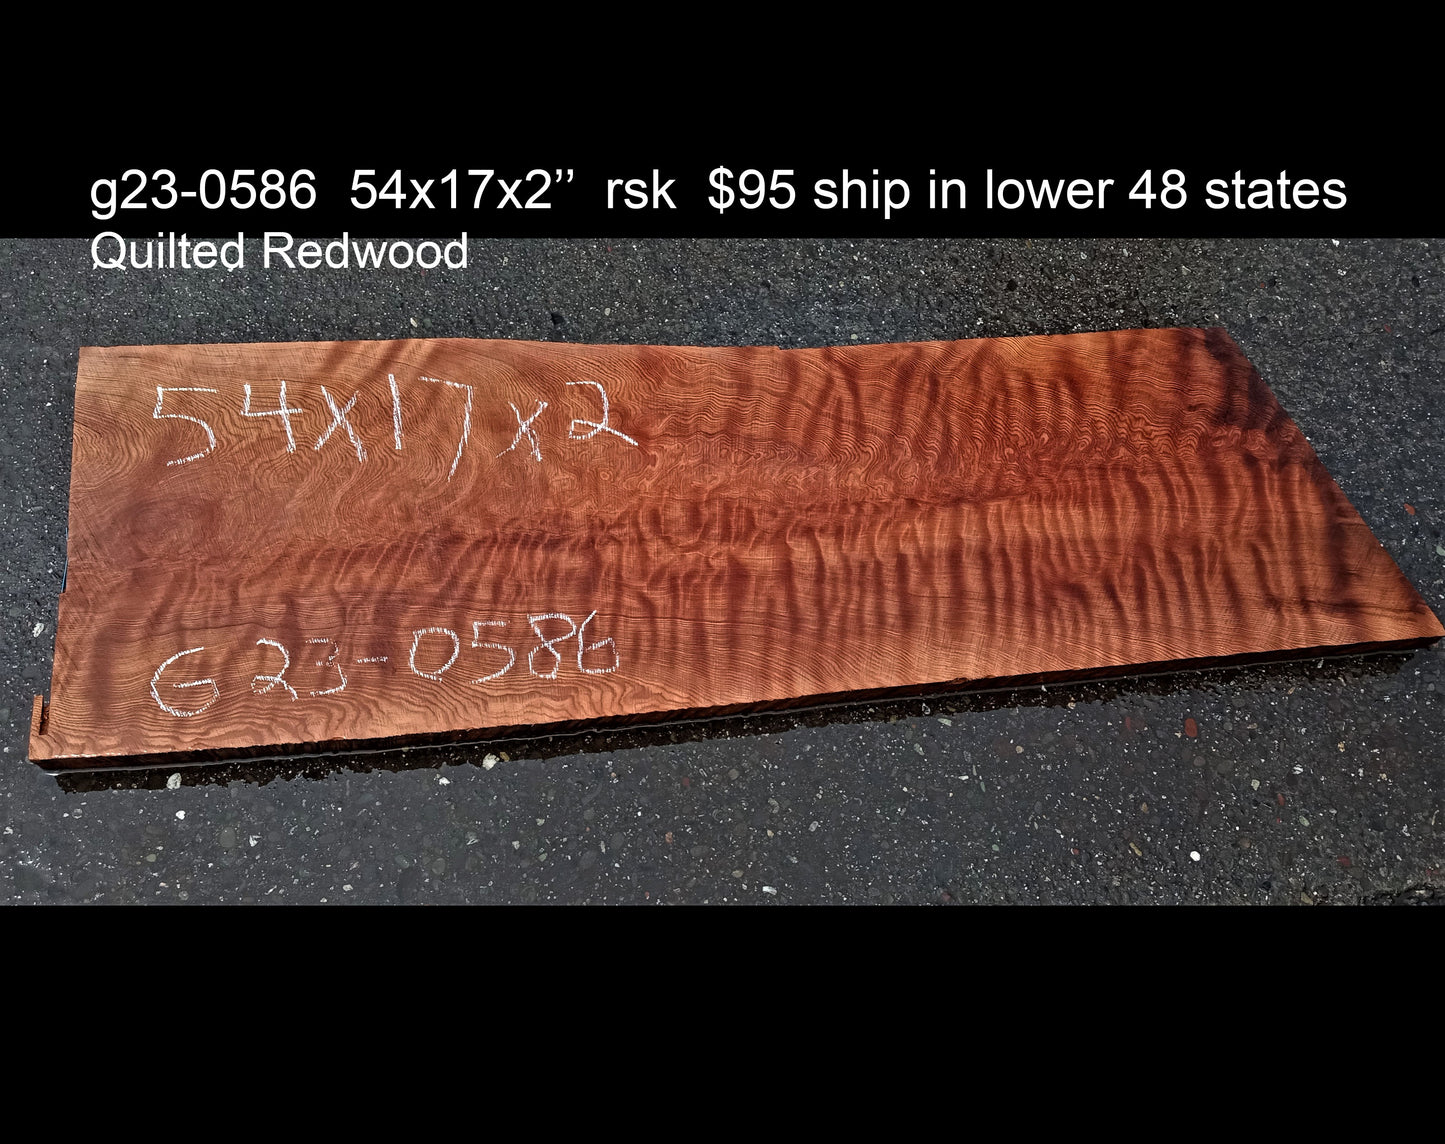 Quilted redwood | guitar billet | wood turning | DIY crafts | g23-0586